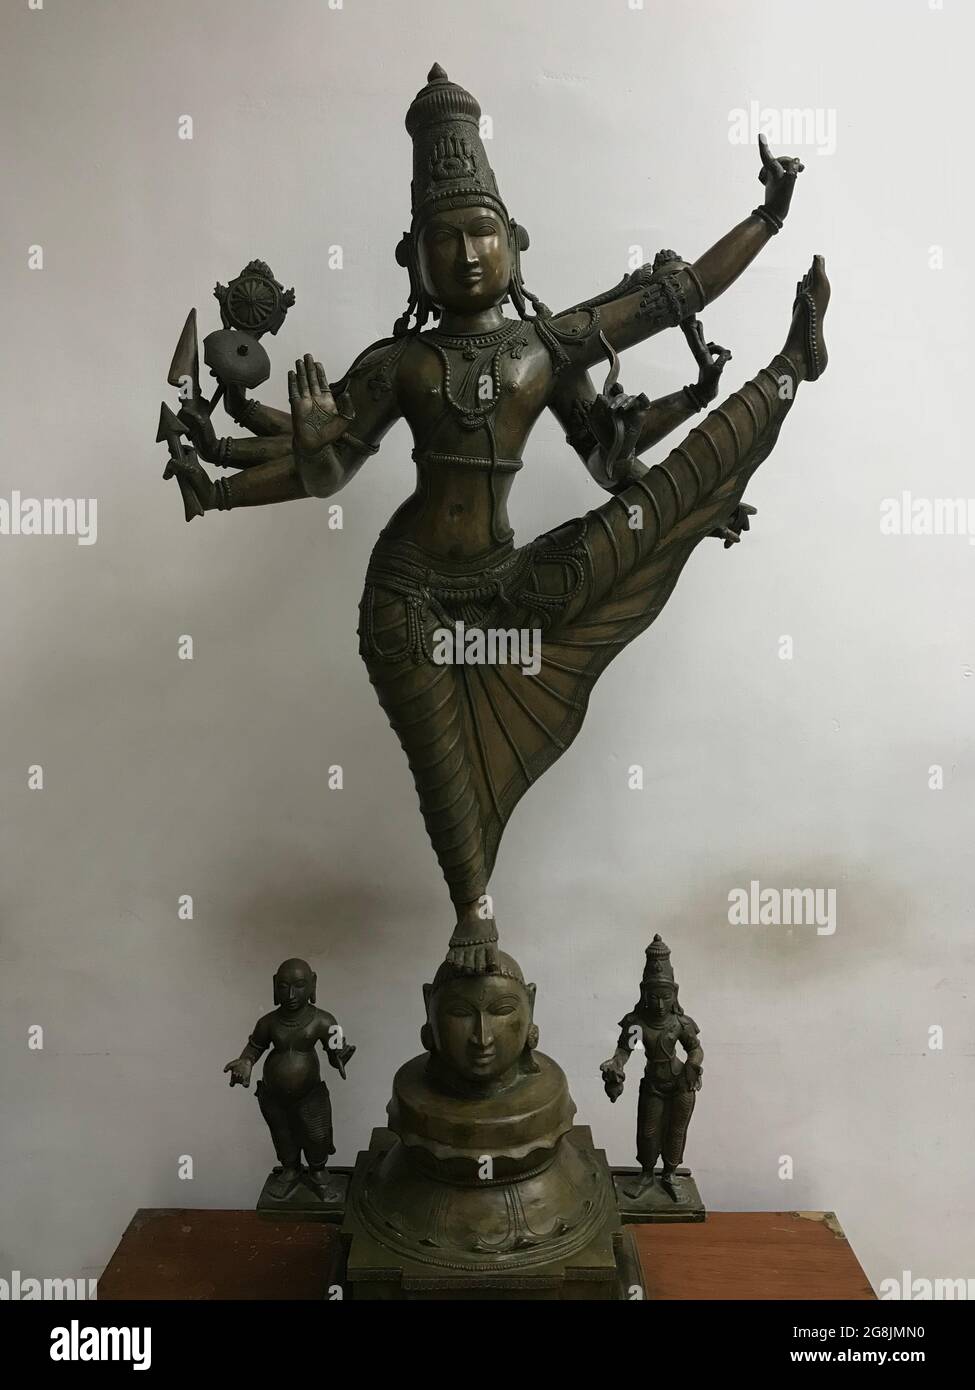 Statue de deux dames jouant des jeux tamouls anciens et grand-mère statue faisant des travaux de maison et beau statut sont situés dans Chennai Inde Banque D'Images